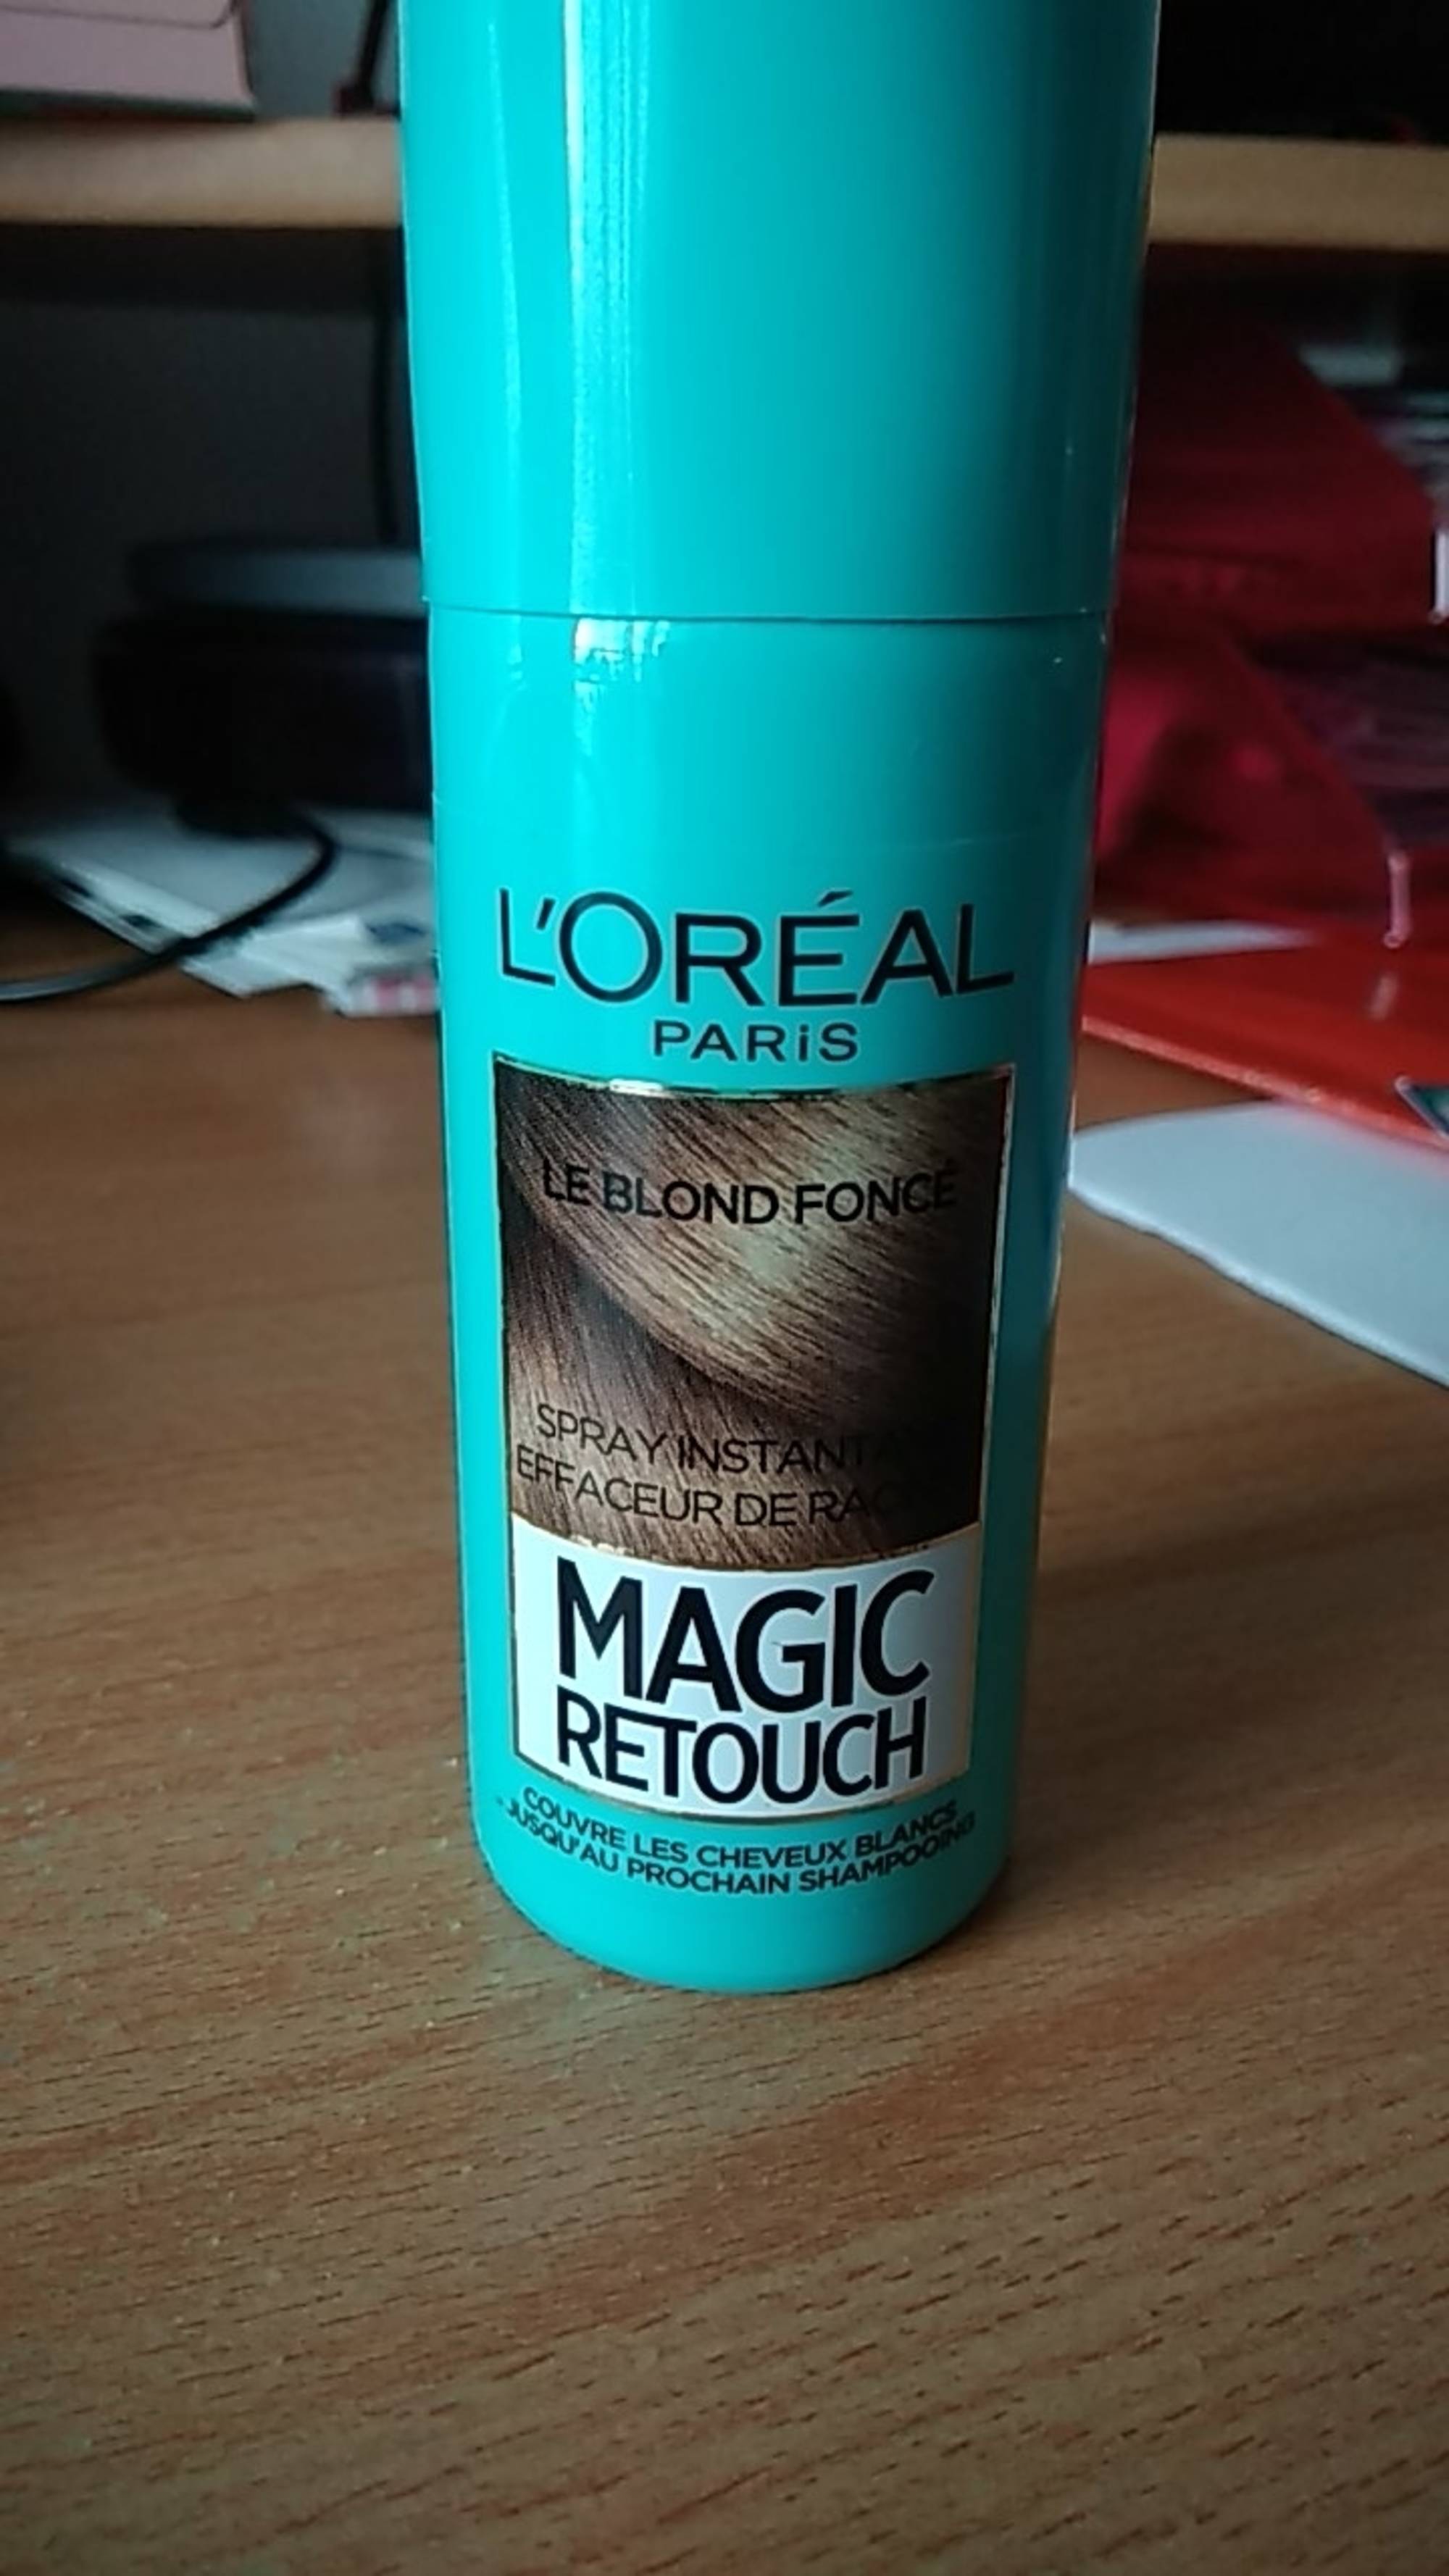 L'ORÉAL - Magic retouch le blond foncé - Spray instantané